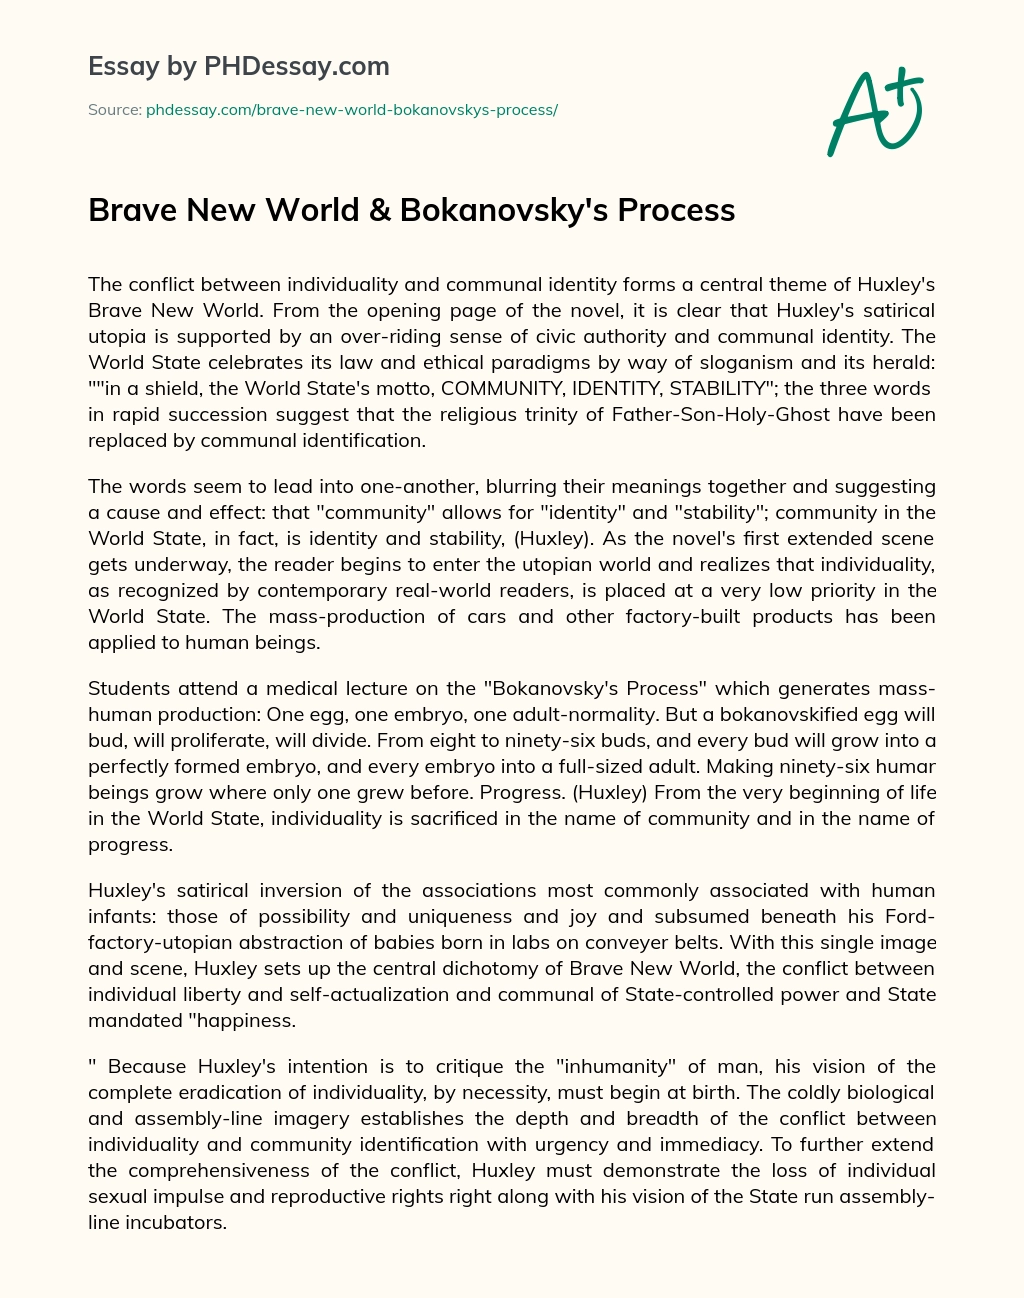 Brave New World & Bokanovsky’s Process essay